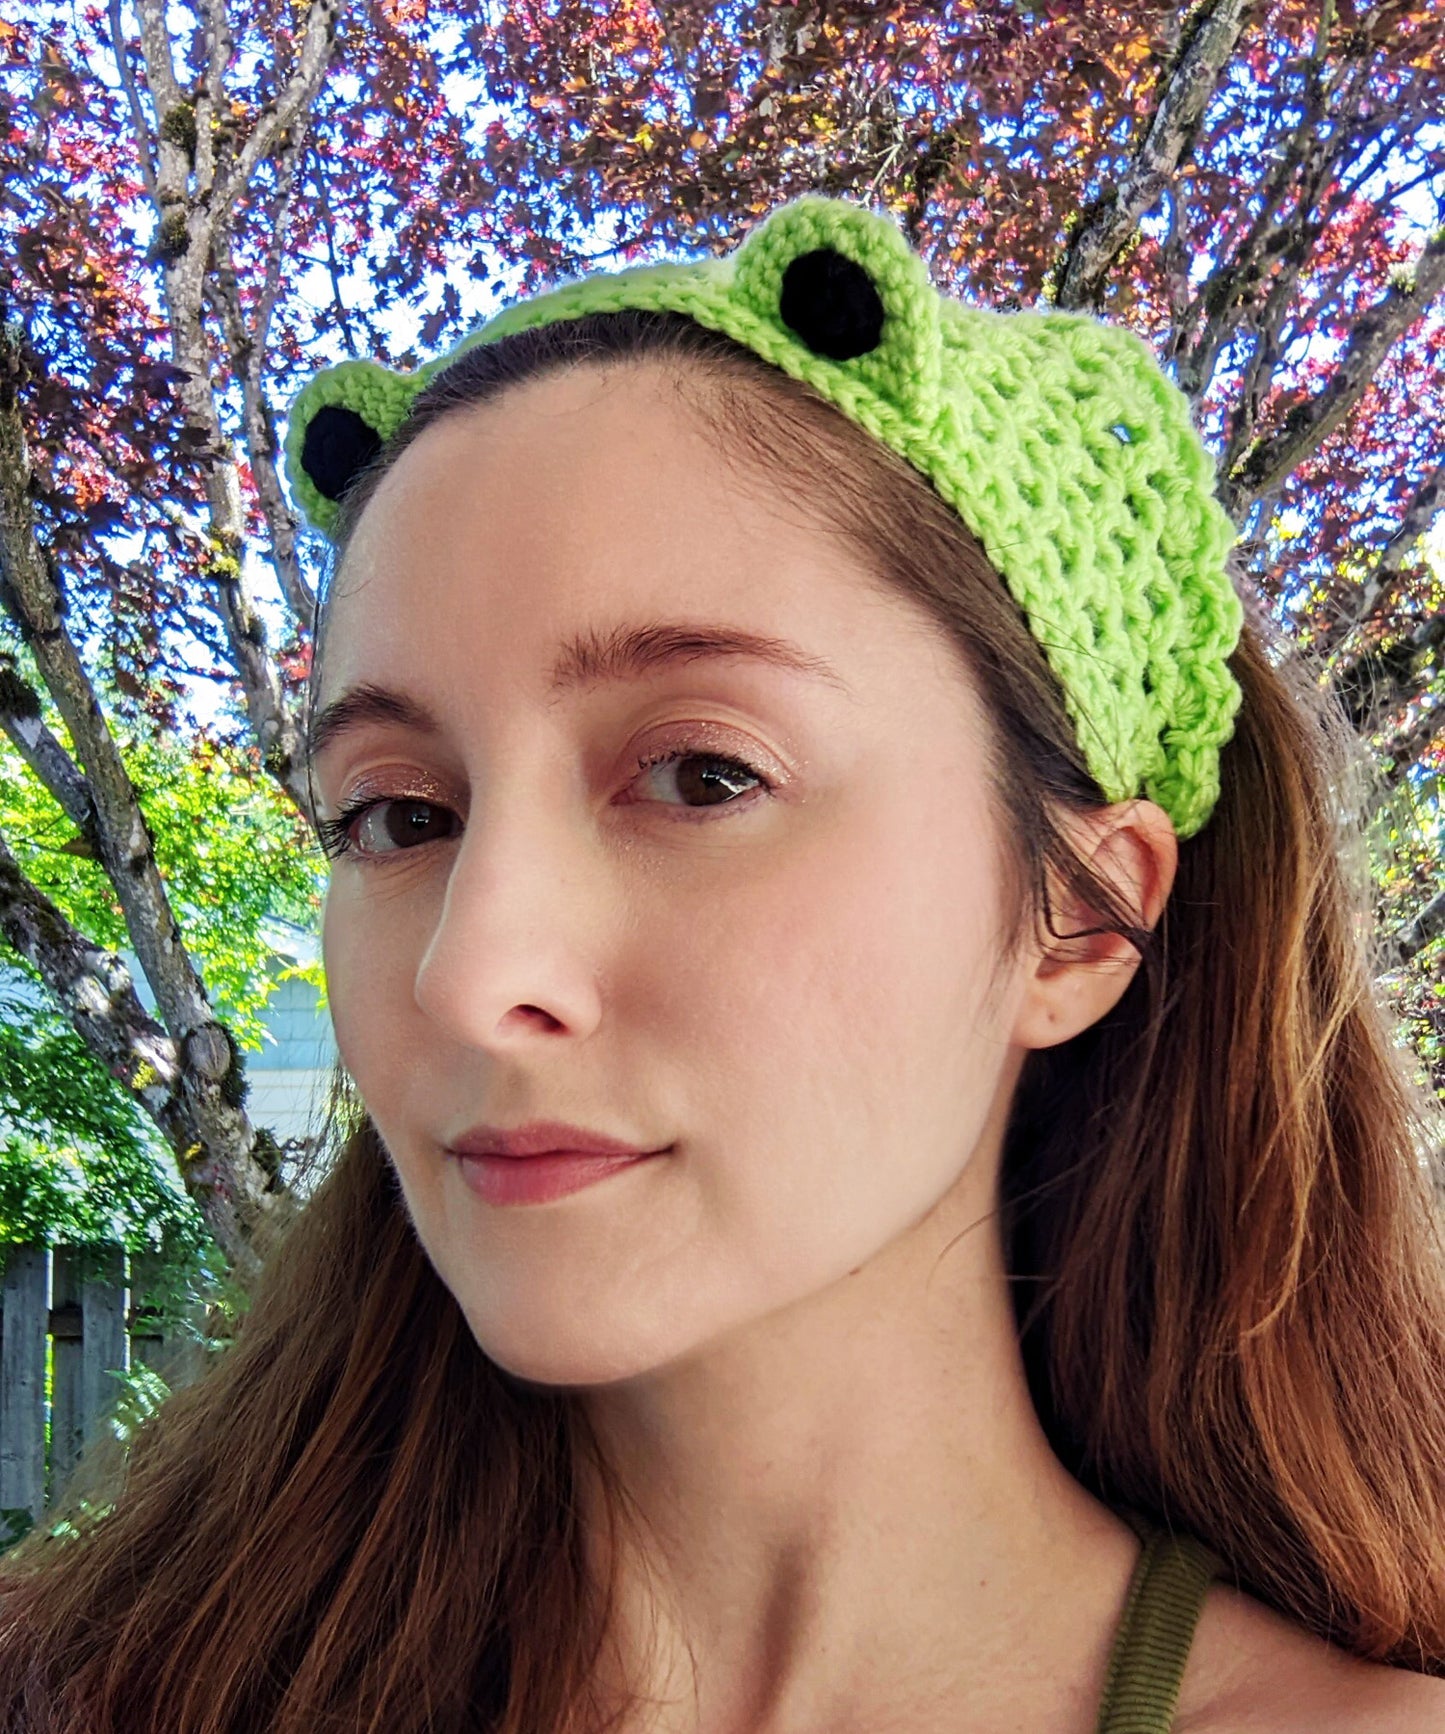 Crochet Pattern: Froggy Bandana